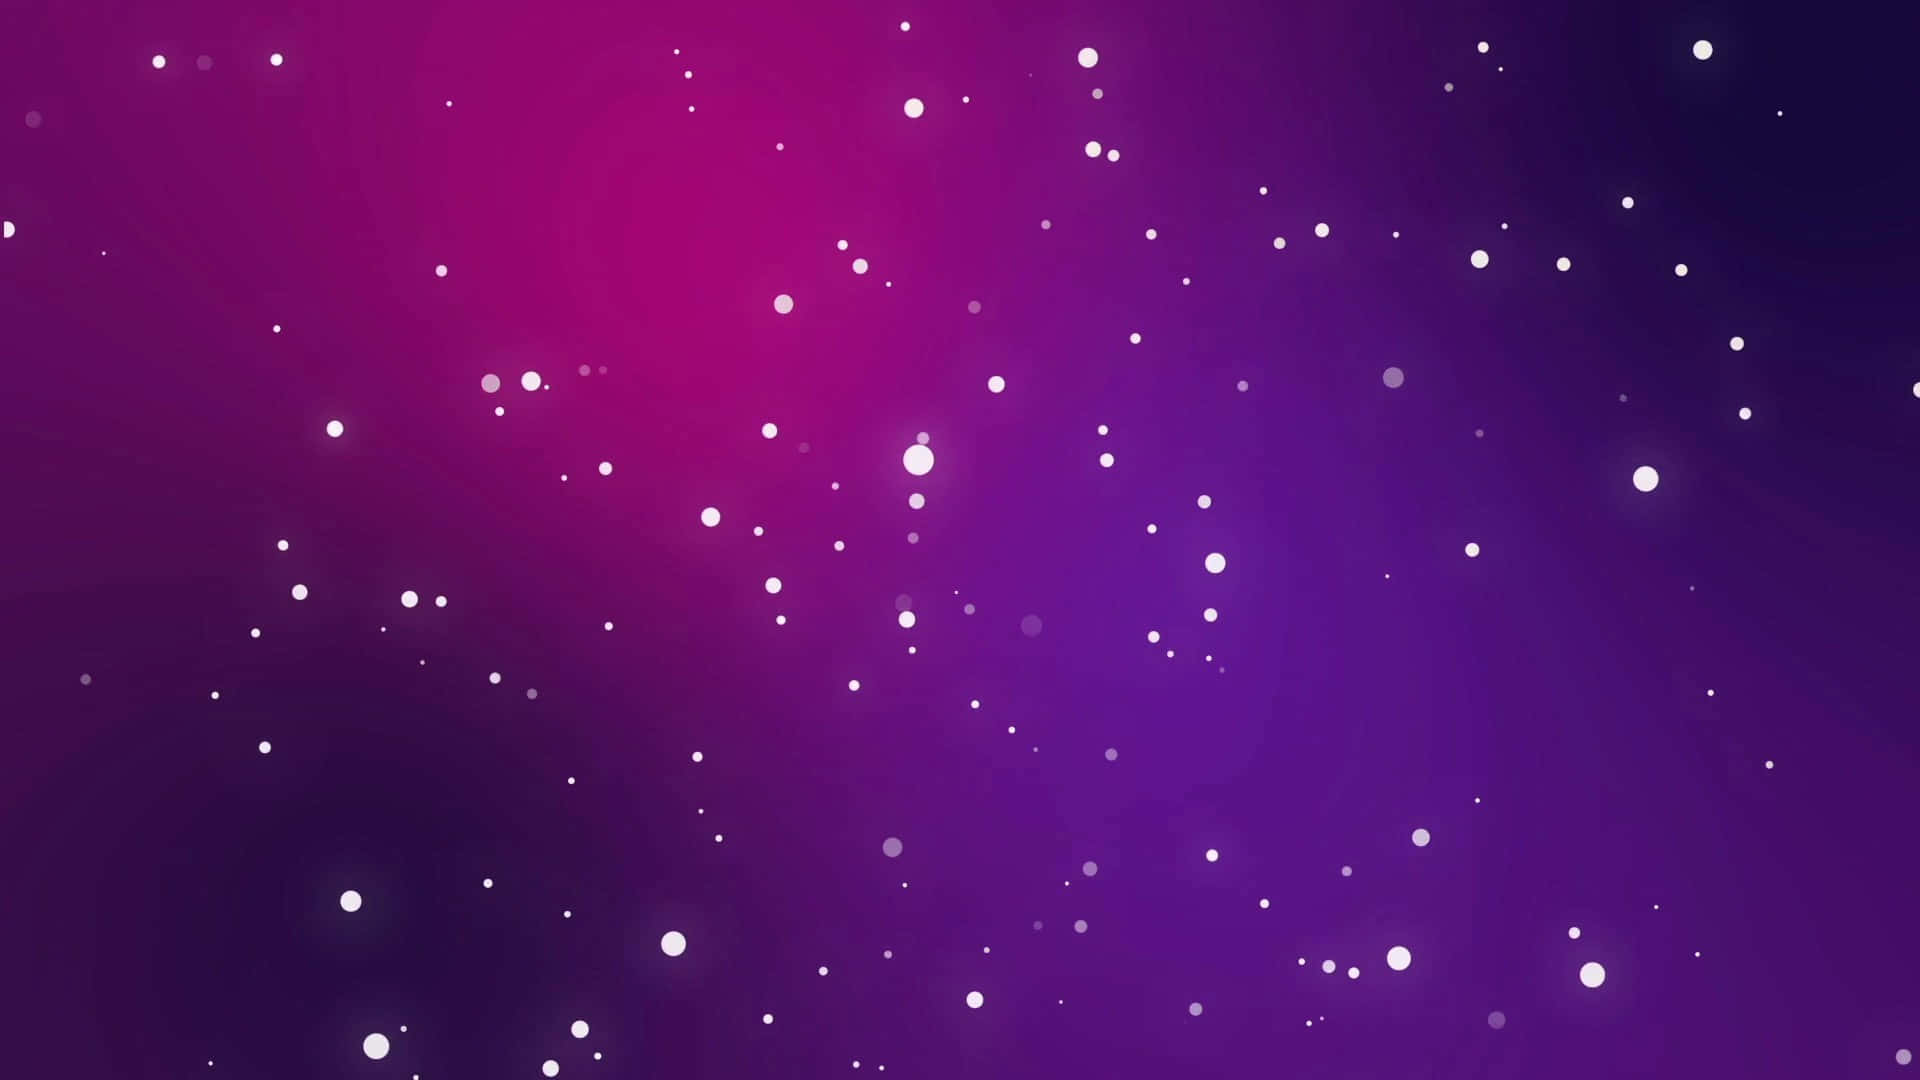 Den skinnende glans af en lilla stjerne, der skinner klart i et dybt blåt nattehimmel. Wallpaper